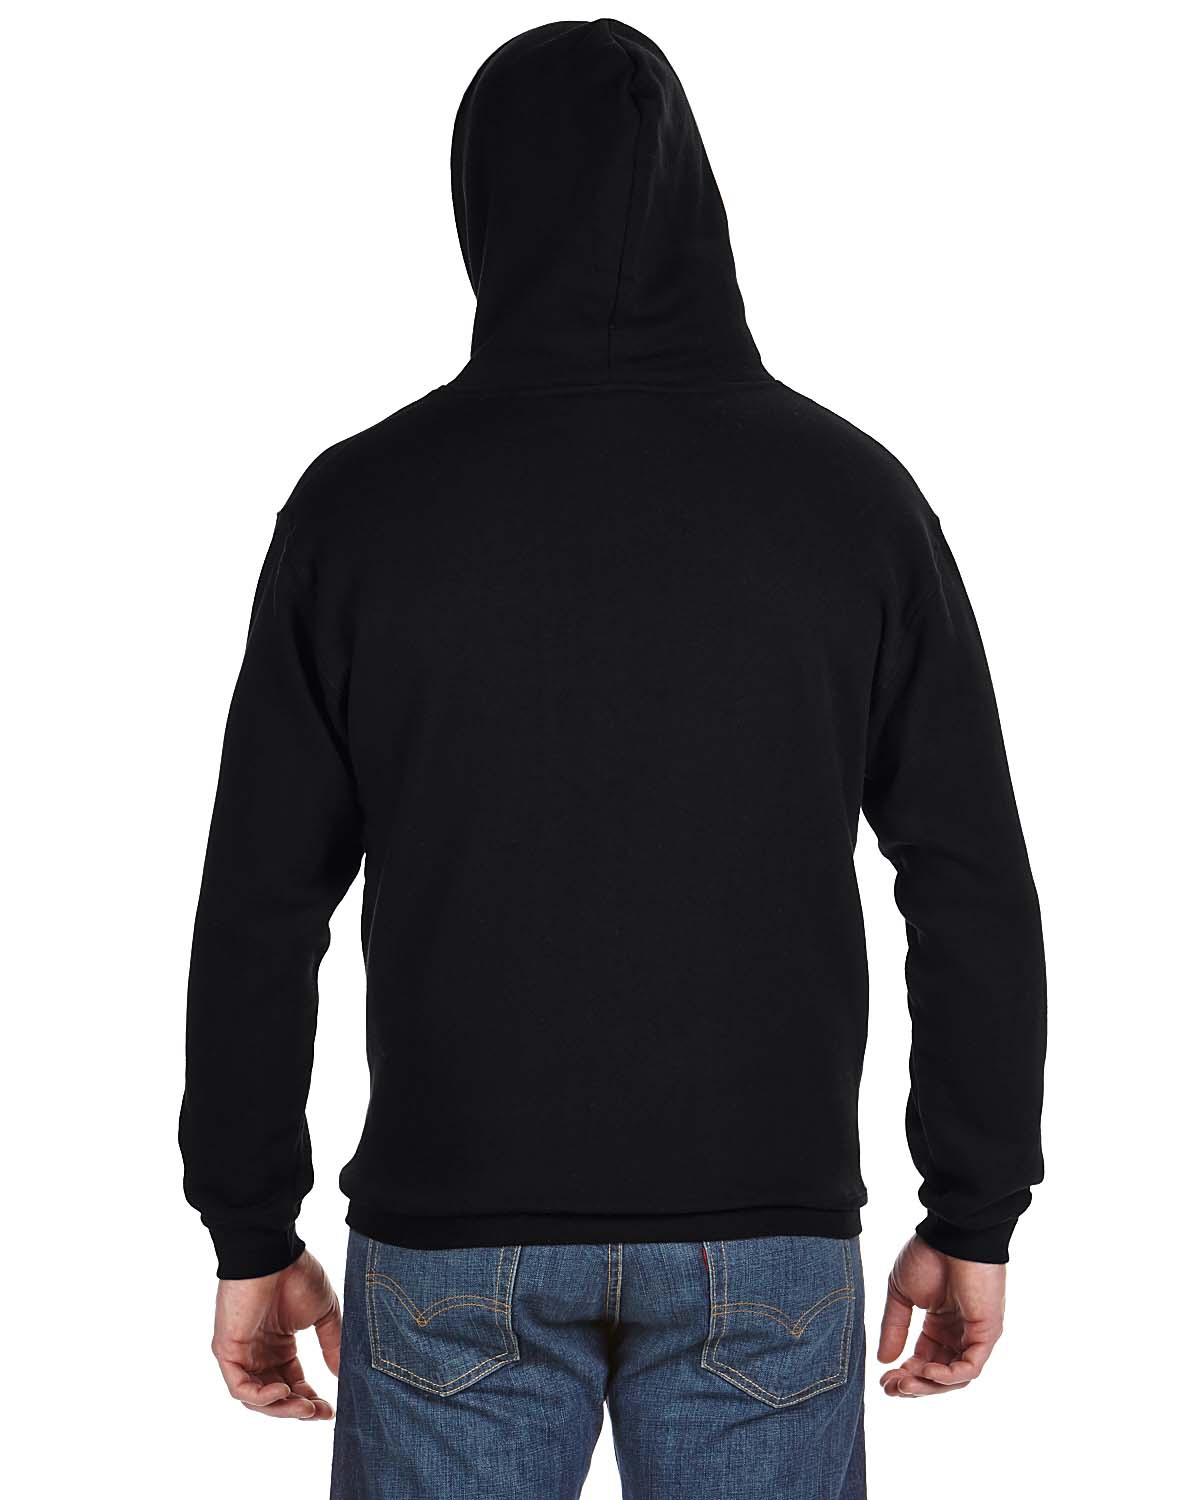 'J America JA8815 Adult Tailgate Fleece Pullover Hooded Sweatshirt'